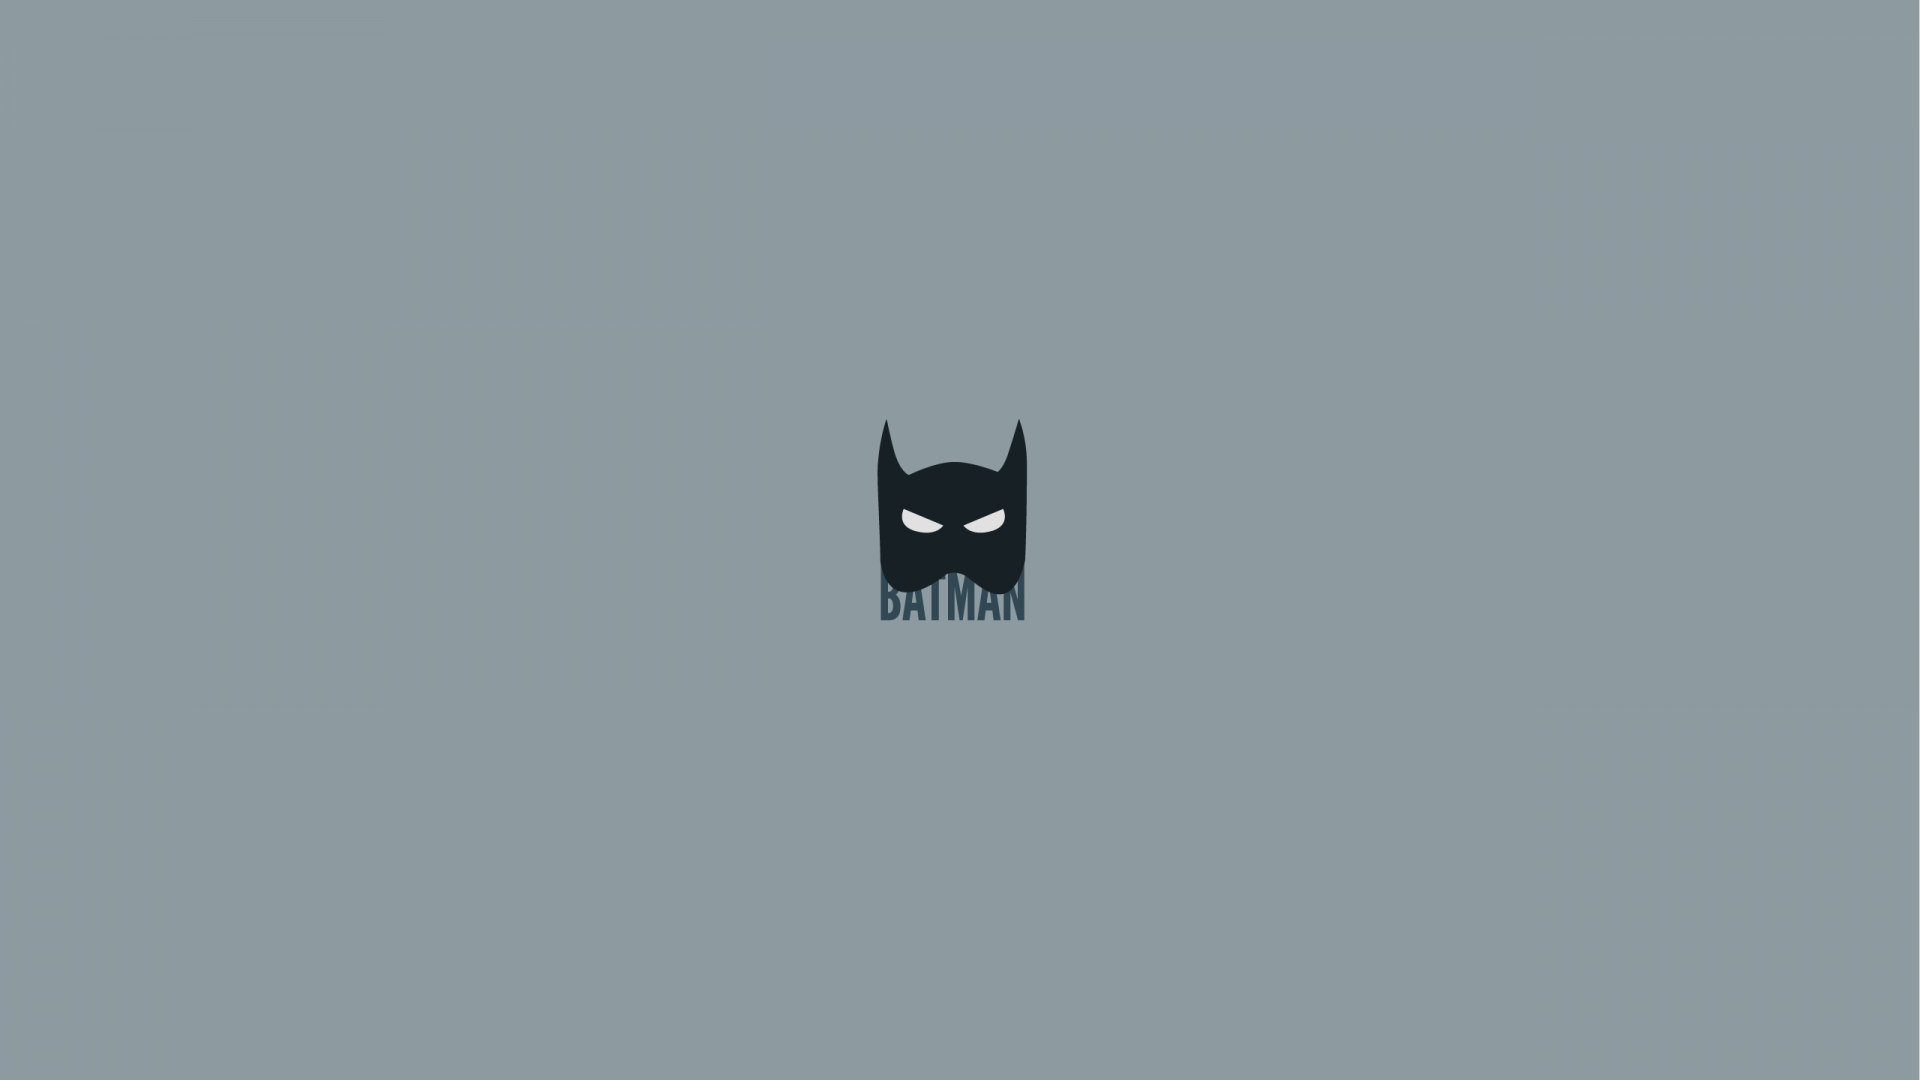 Wallpaper Batman minimalist mask